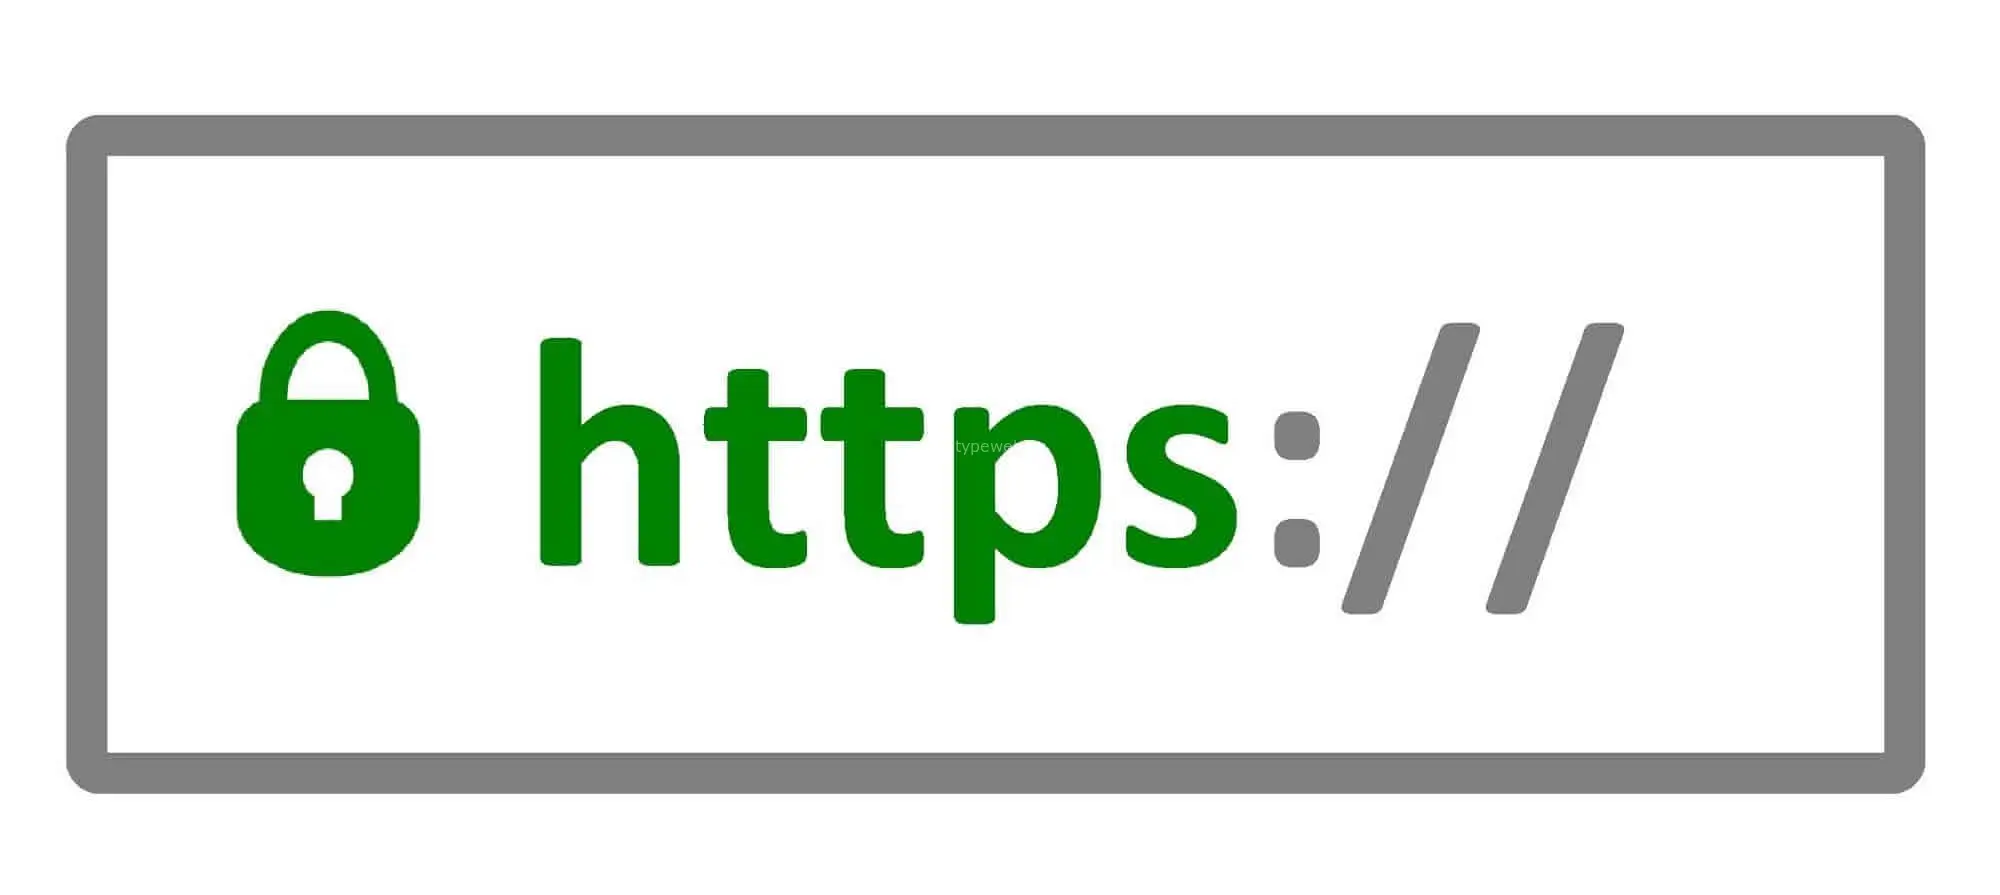 Сайт https пример. SSL сертификат. SSL логотип. Защищенное соединение SSL. Защищенное соединение значок.